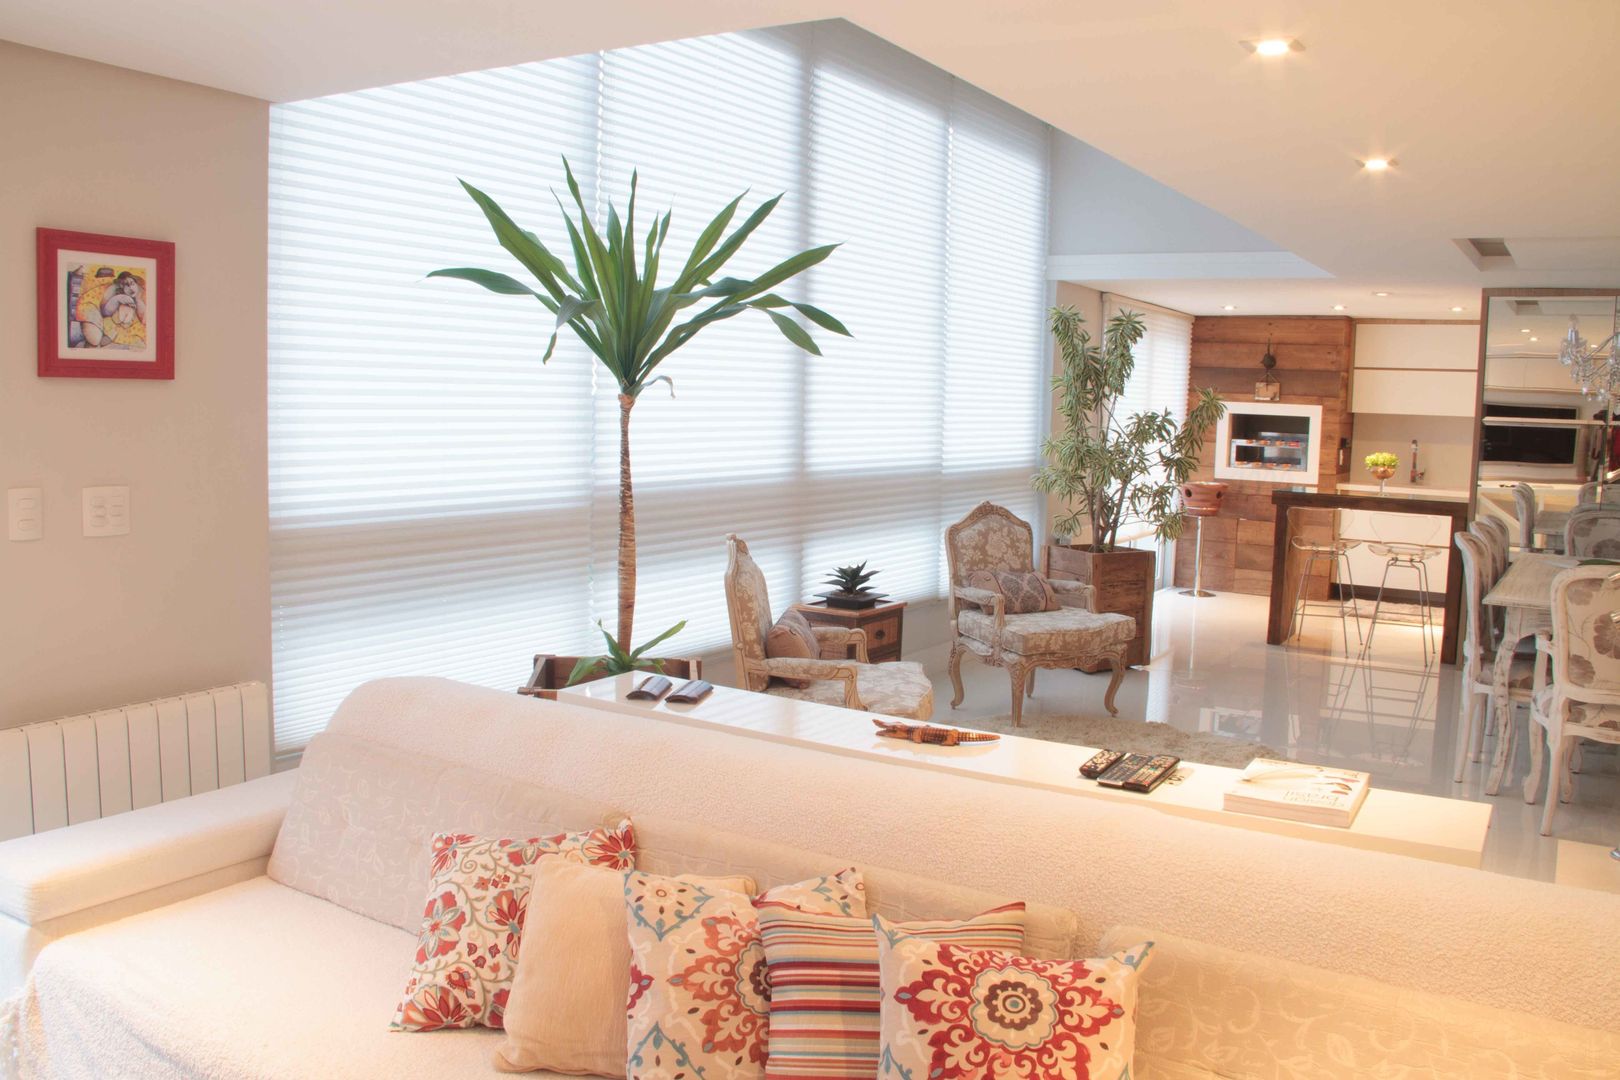 Projeto de Arquitetura de Interiores - Apartamento Família, Sarah & Dalira Sarah & Dalira Salones eclécticos